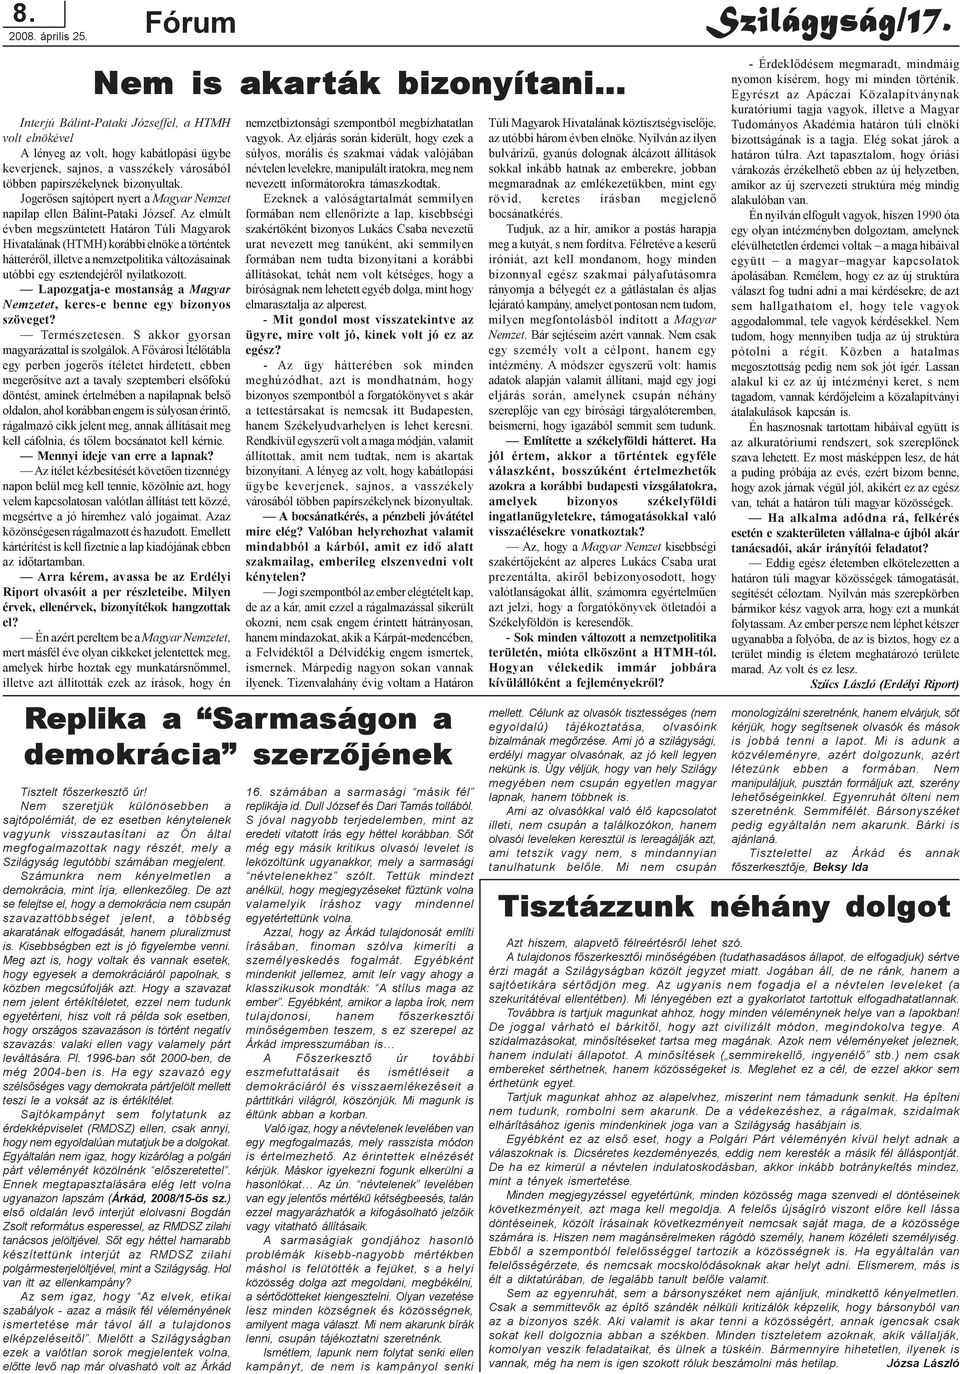 bizonyultak. Jogerõsen sajtópert nyert a Magyar Nemzet napilap ellen Bálint-Pataki József.